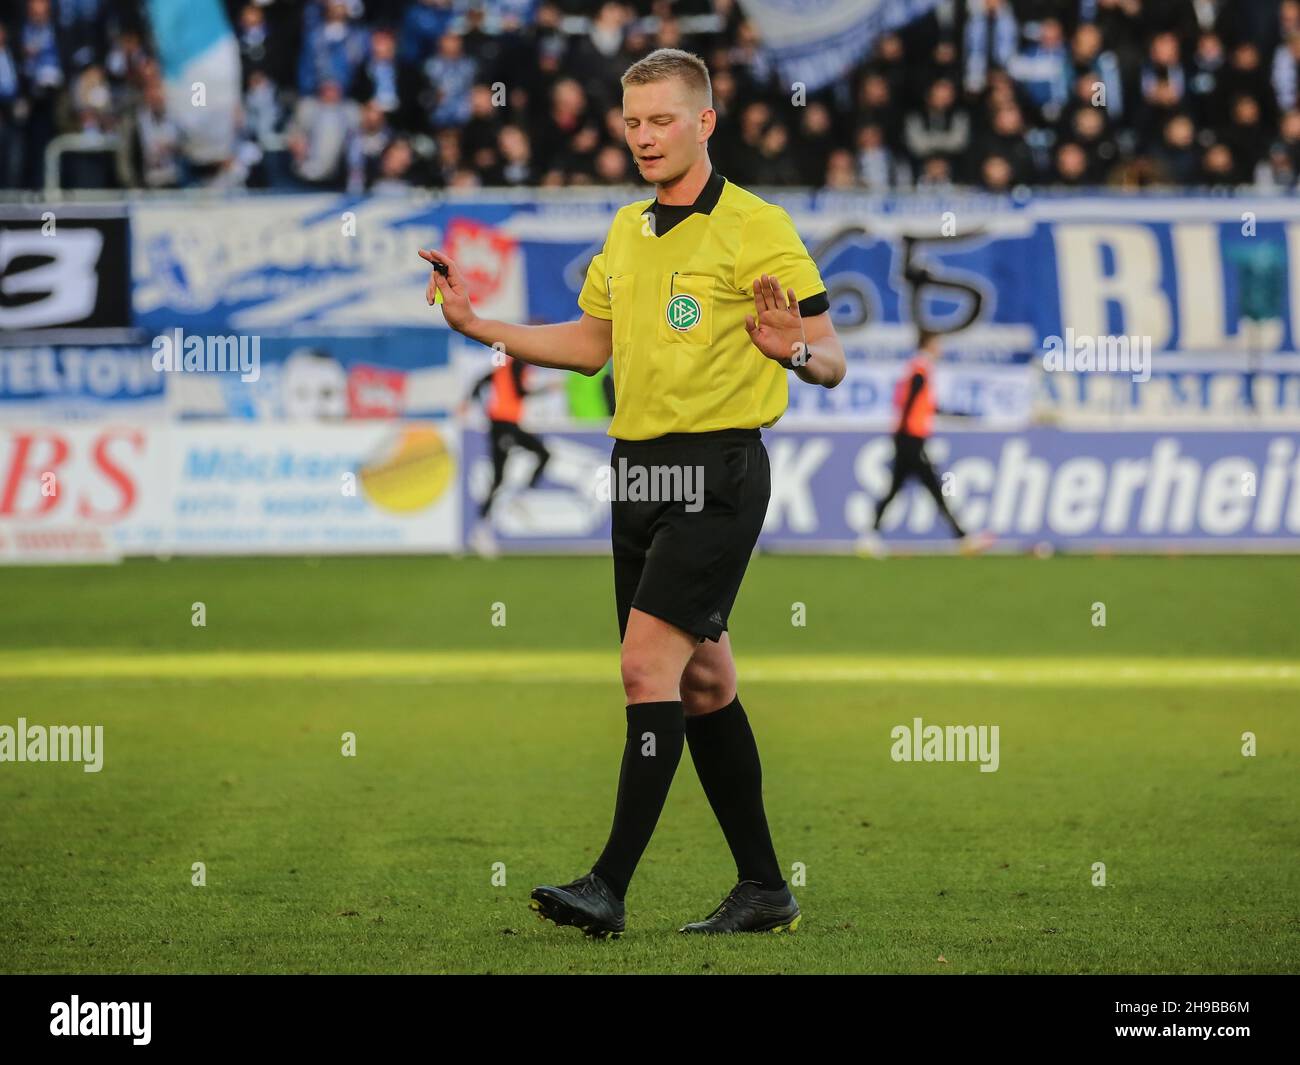 Ron Berlinski SC Verl in the game 1. FC Magdeburg vs. SC Verl